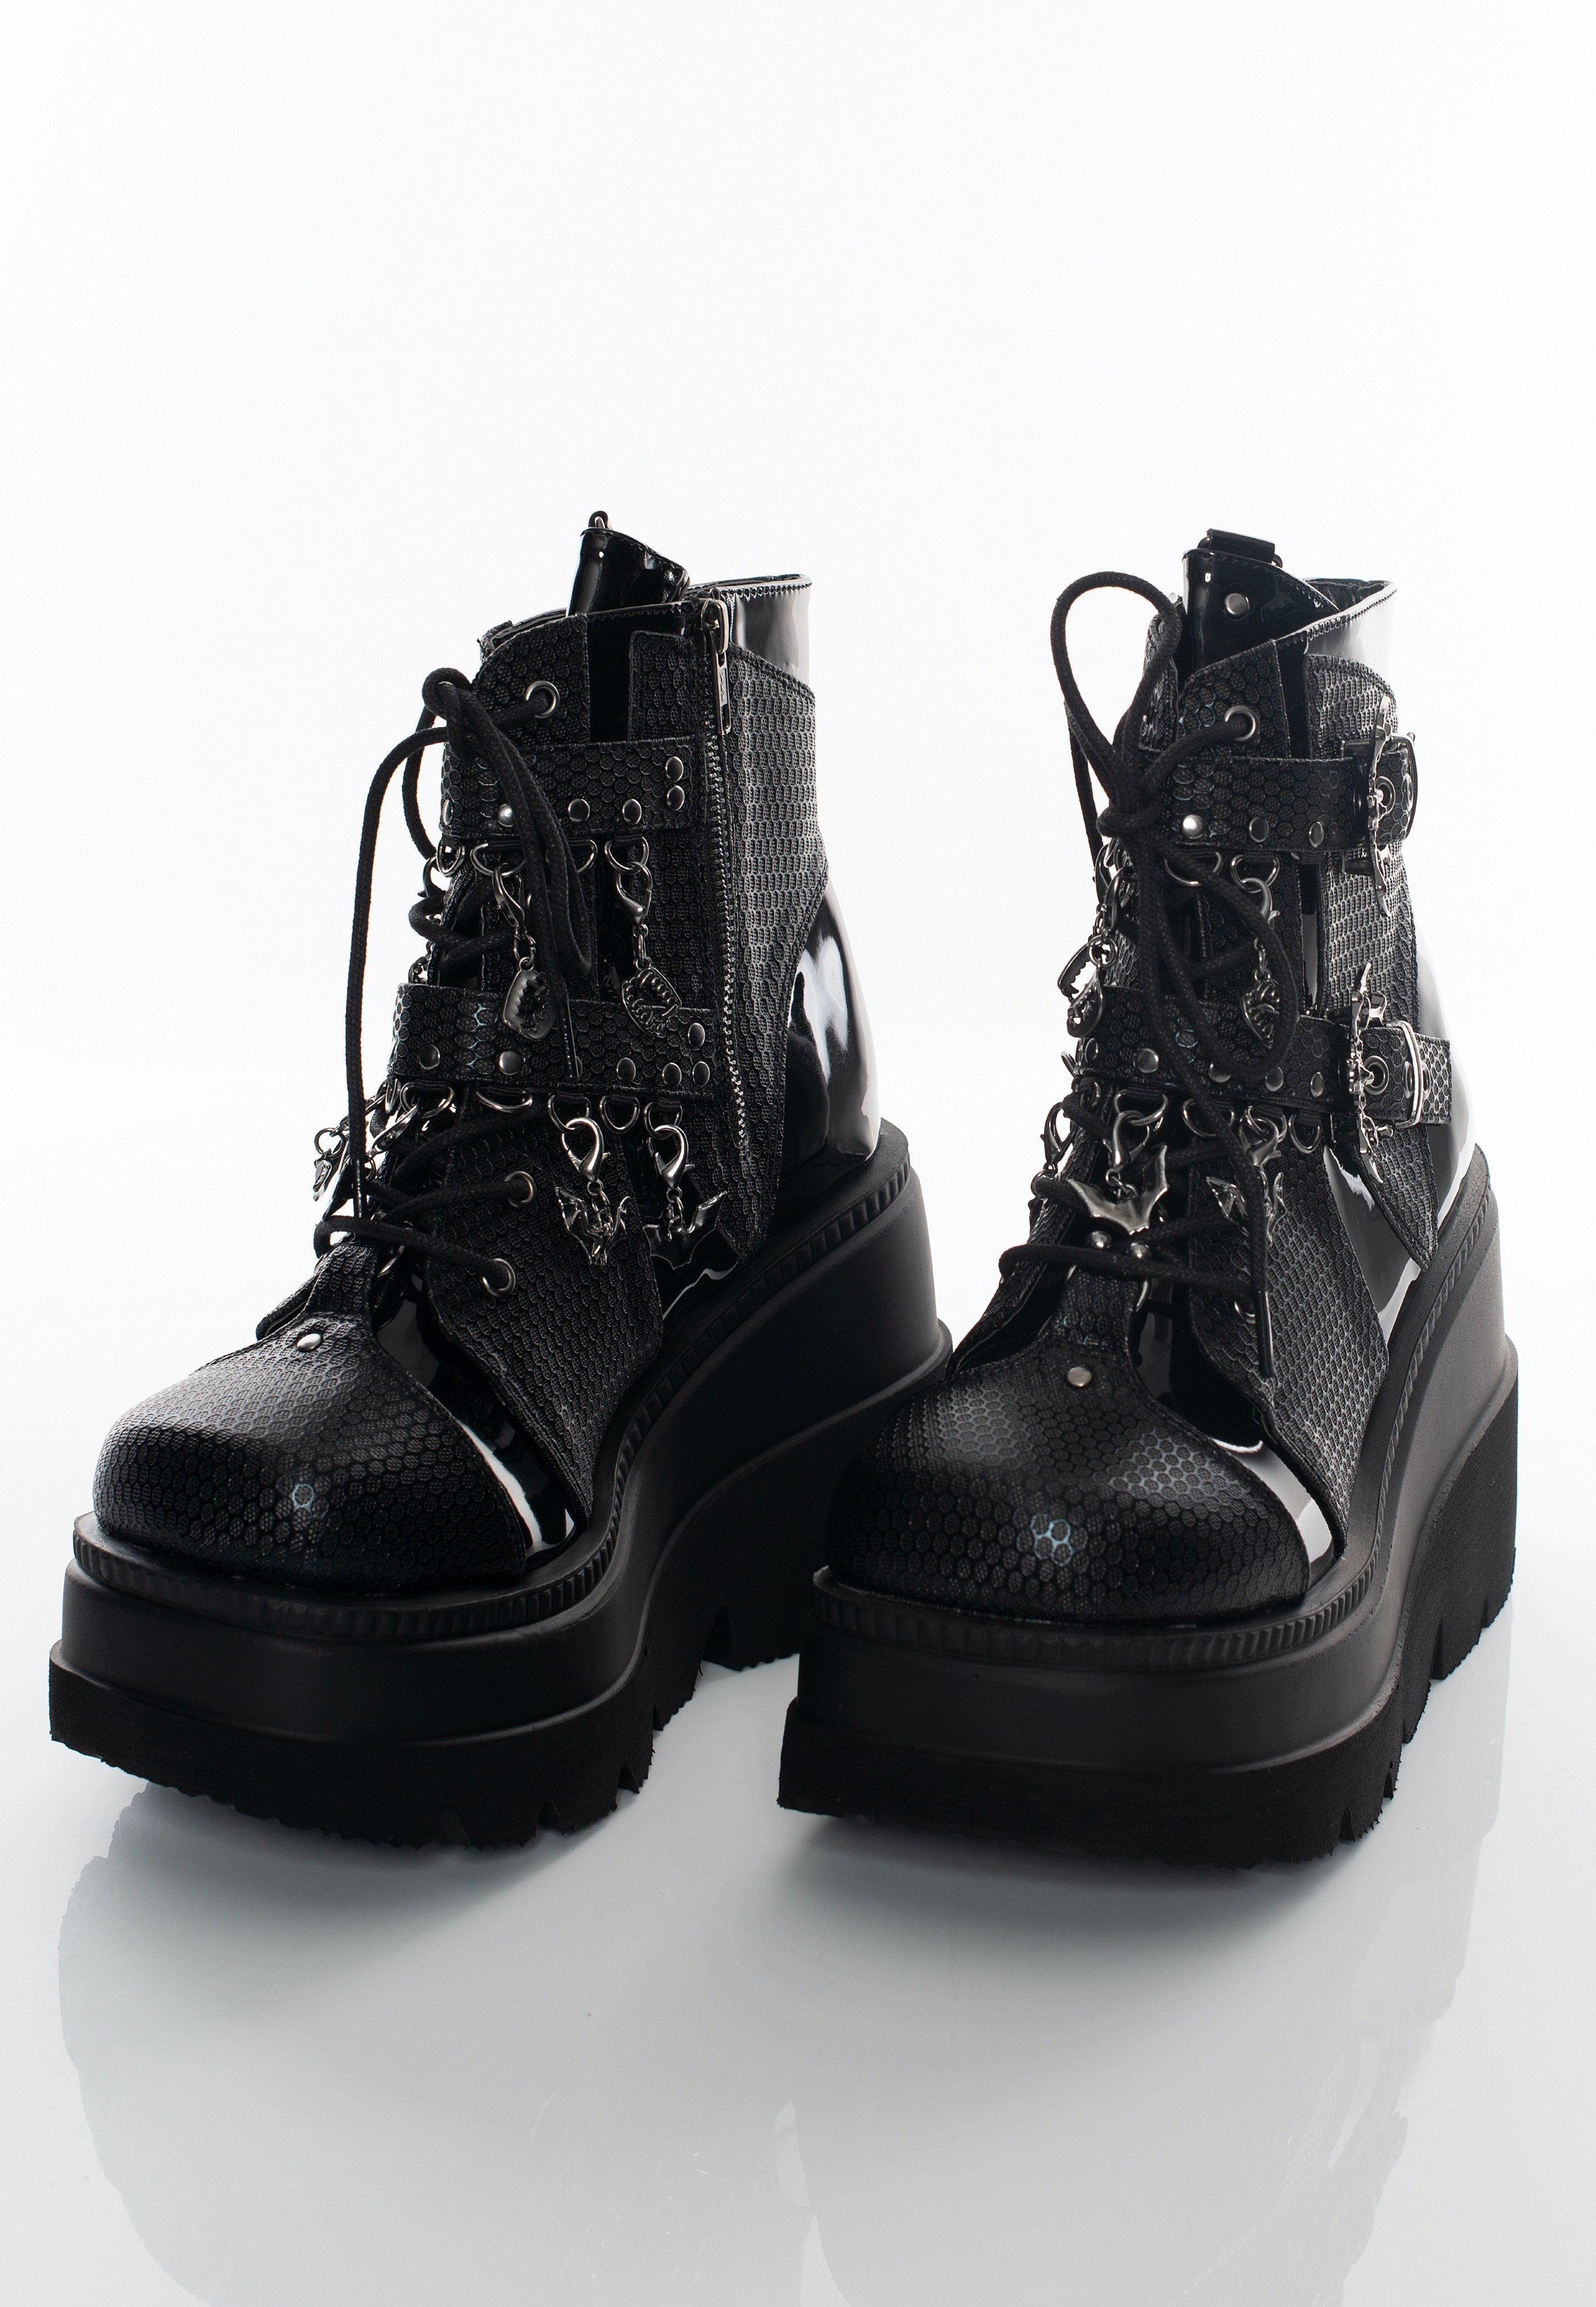 DemoniaCult - Shaker 66 Black Vegan Leather - Girl Shoes